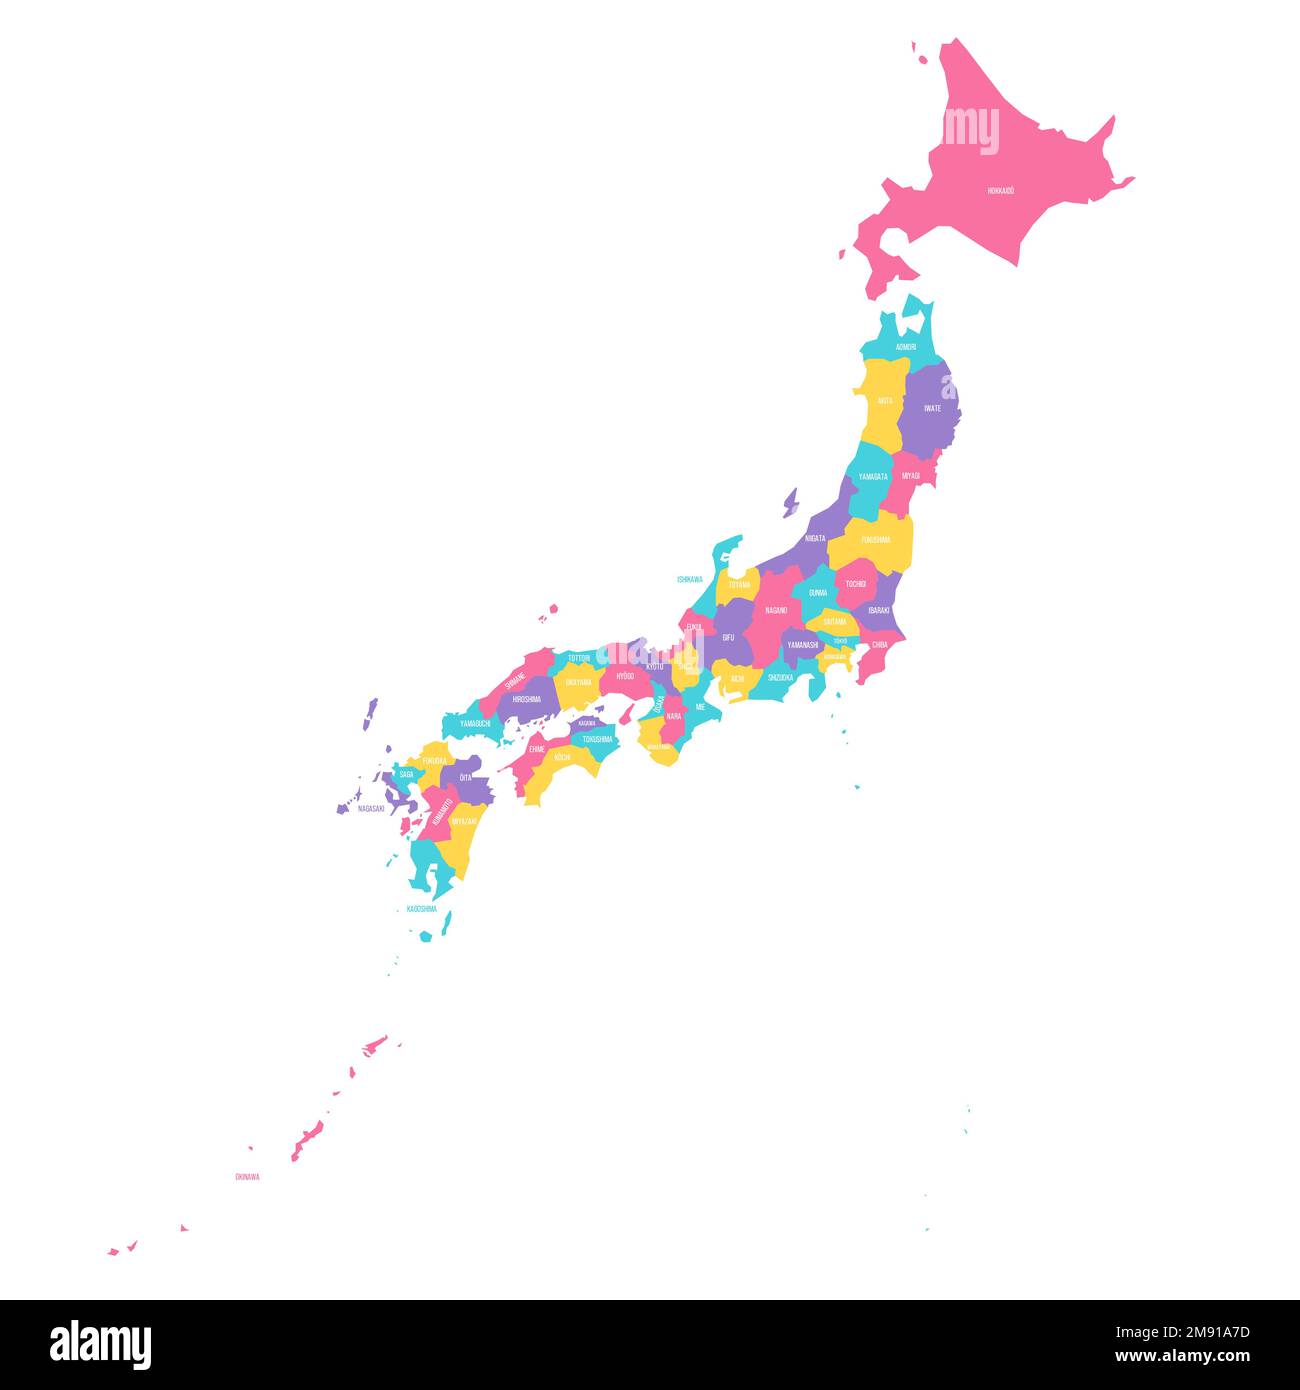 Politische Karte der Verwaltungseinheiten Japans - Präfekturen, Metropilis Tokio, Territorium Hokaido und städtische Präfekturen Kyoto und Osaka. Farbenfrohe Vektorkarte mit Beschriftungen. Stock Vektor